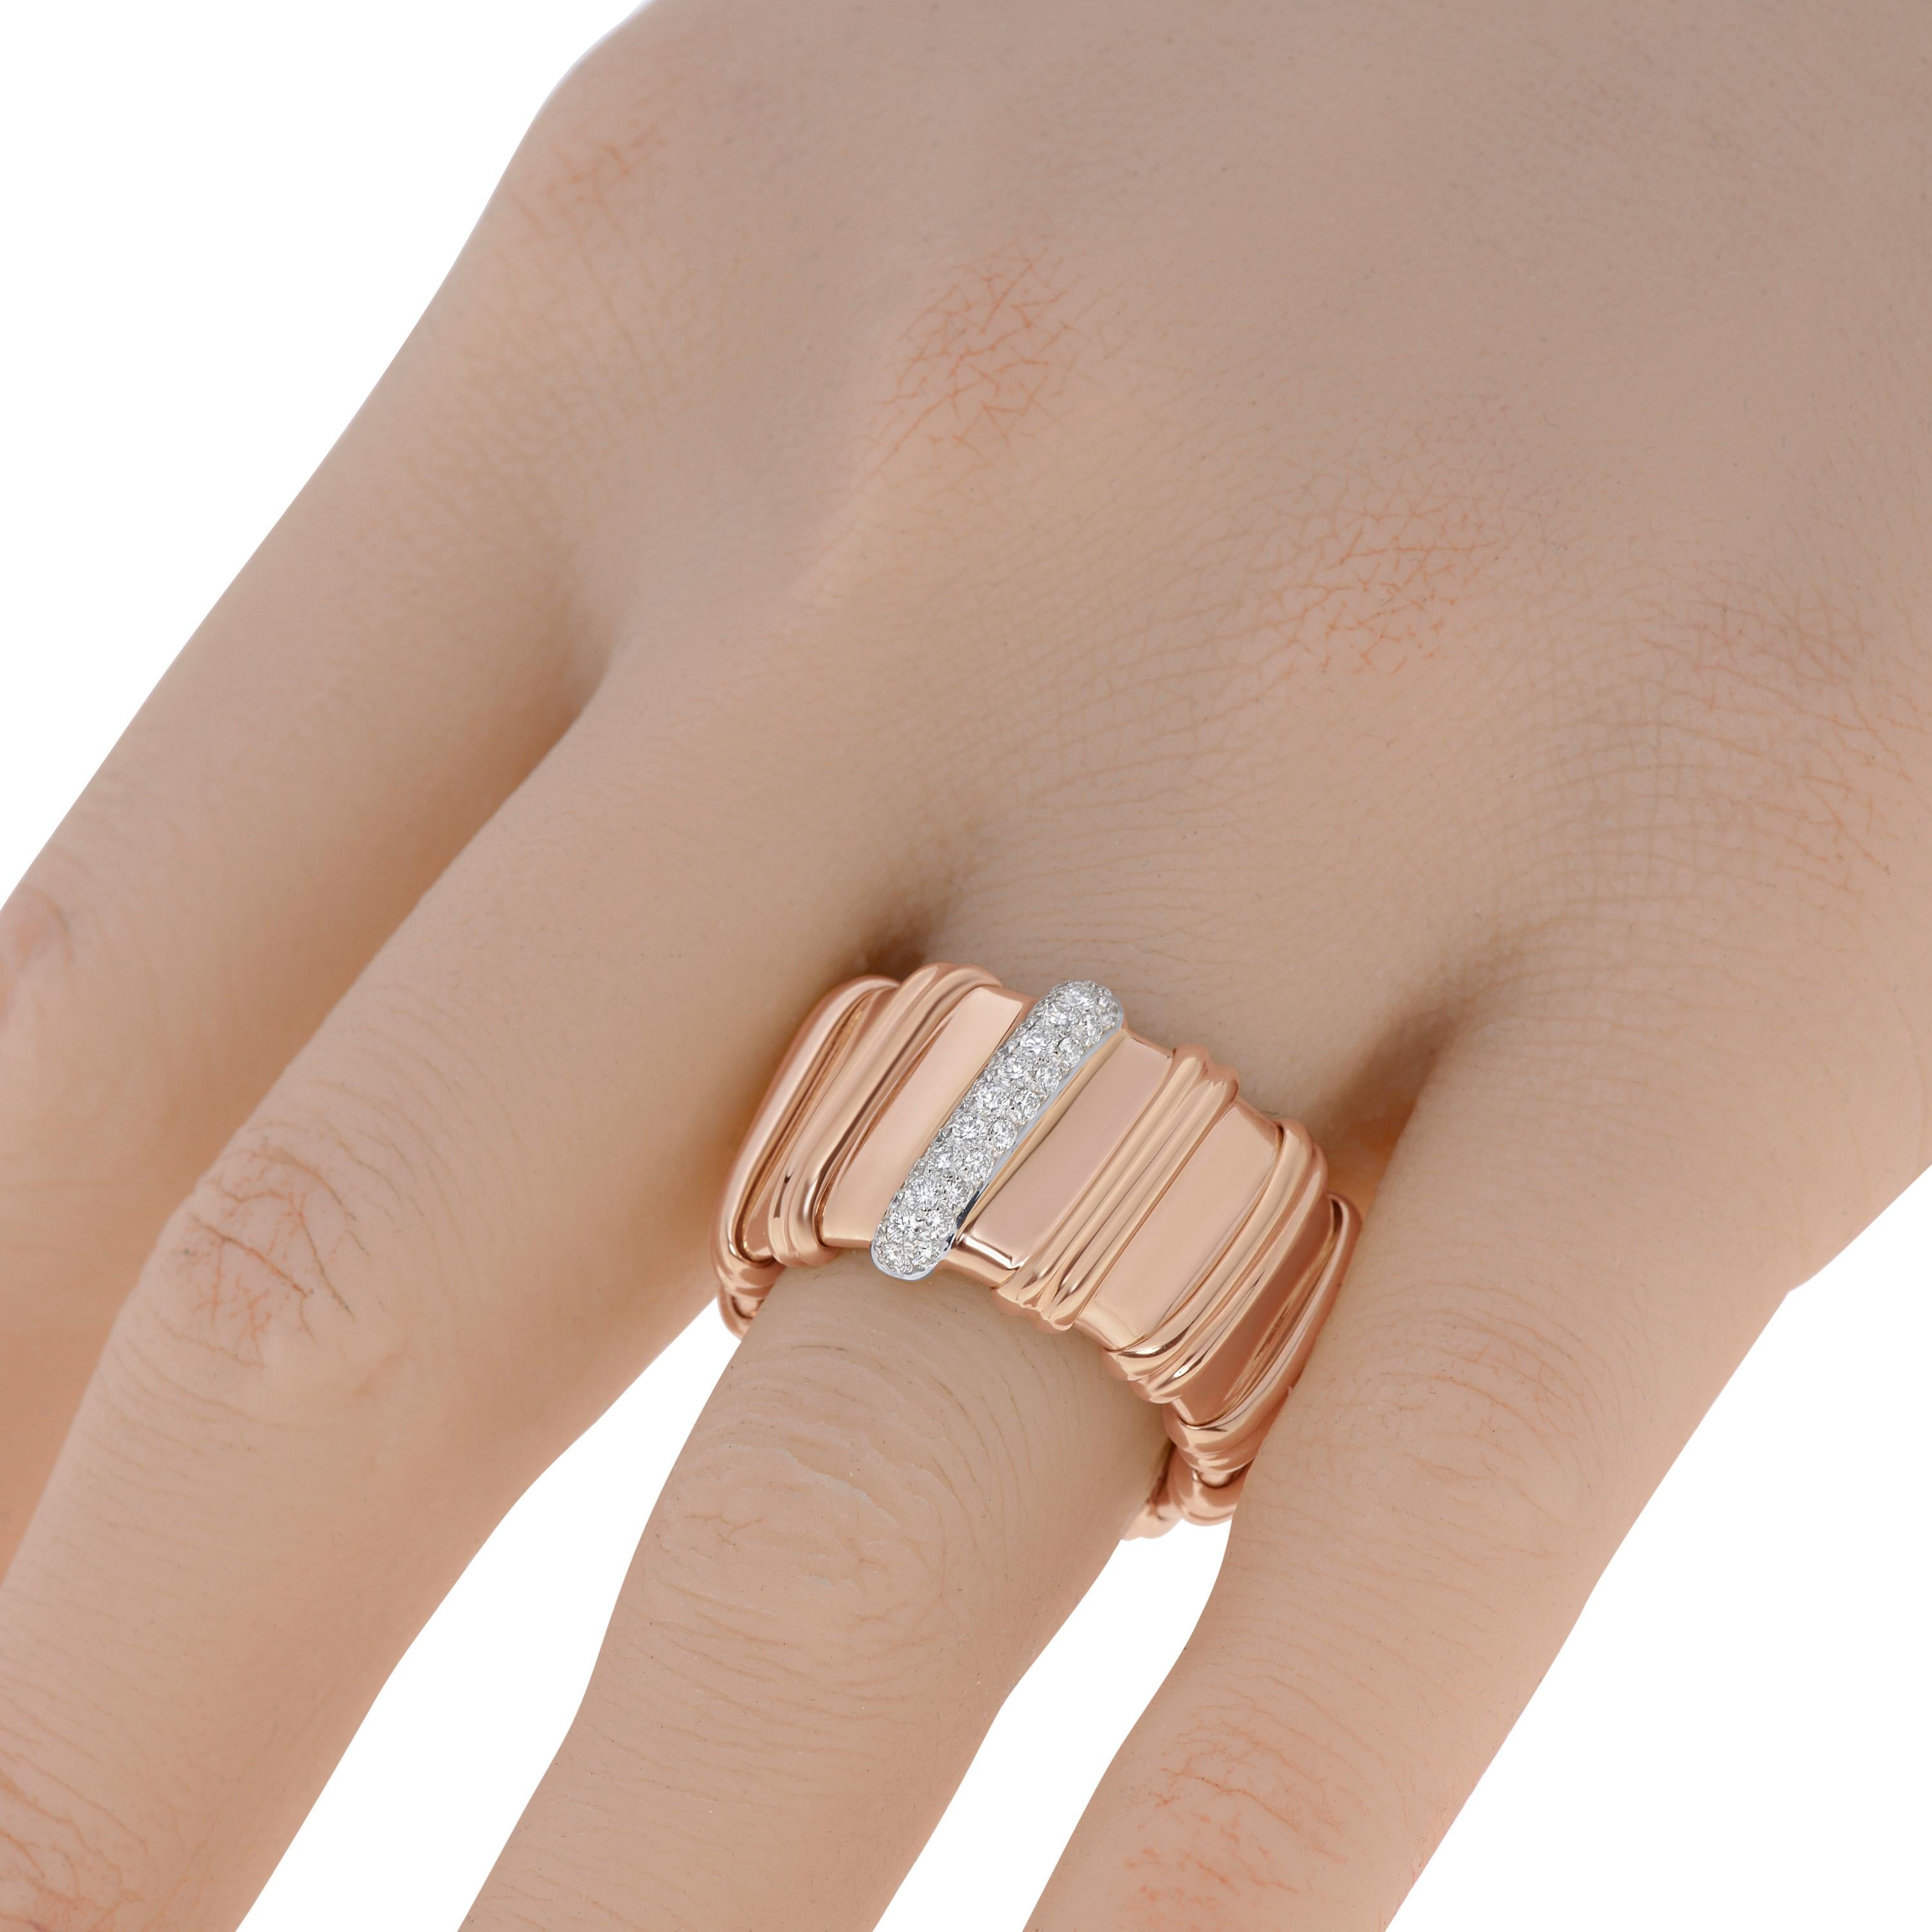 Cet élégant bracelet Roberto Coin en or rose 18 carats est orné de diamants 0,30 ct twd. Le bracelet est souple et de taille 7.  La largeur du bracelet est de 15 mm. Le poids total est de 15,5 g. Ce bijou de créateur est livré avec une pochette